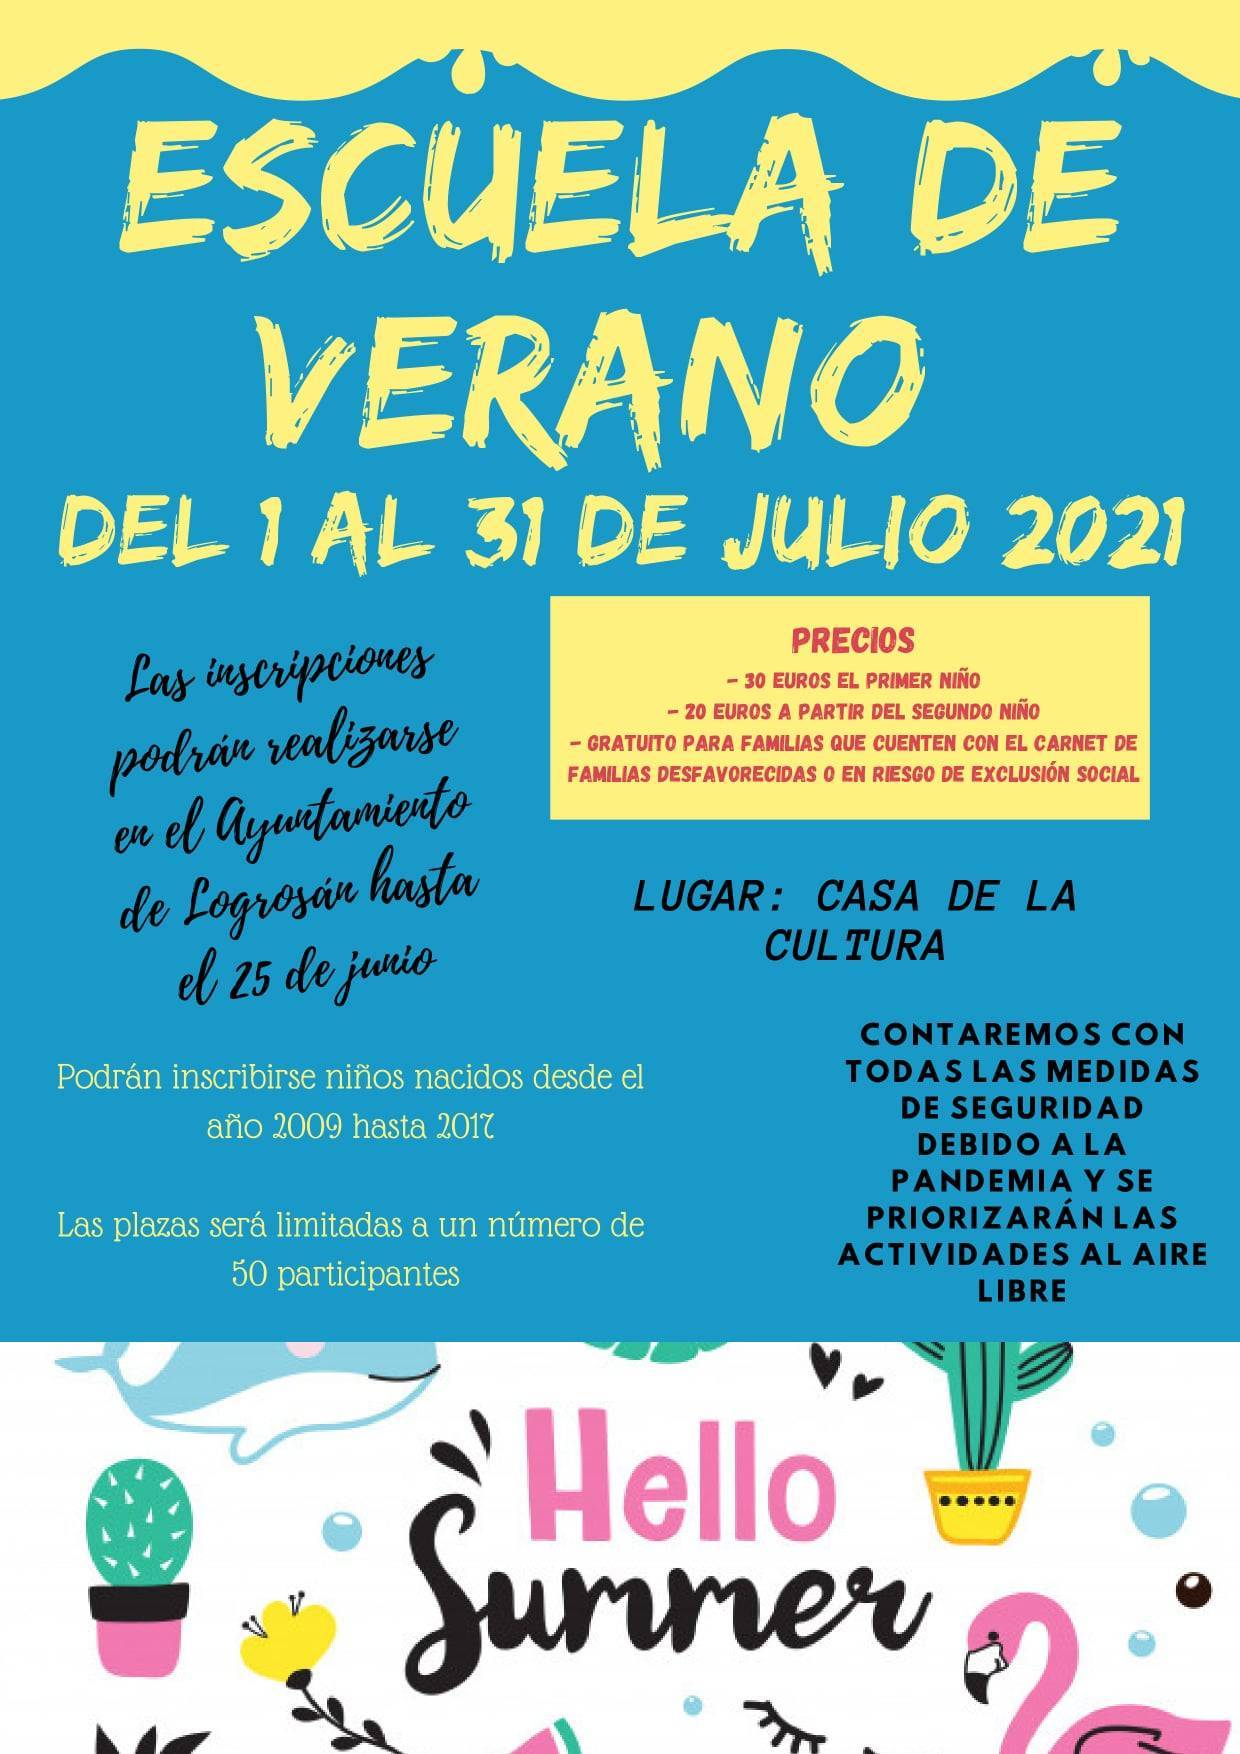 Escuela de verano (2021) - Logrosán (Cáceres)